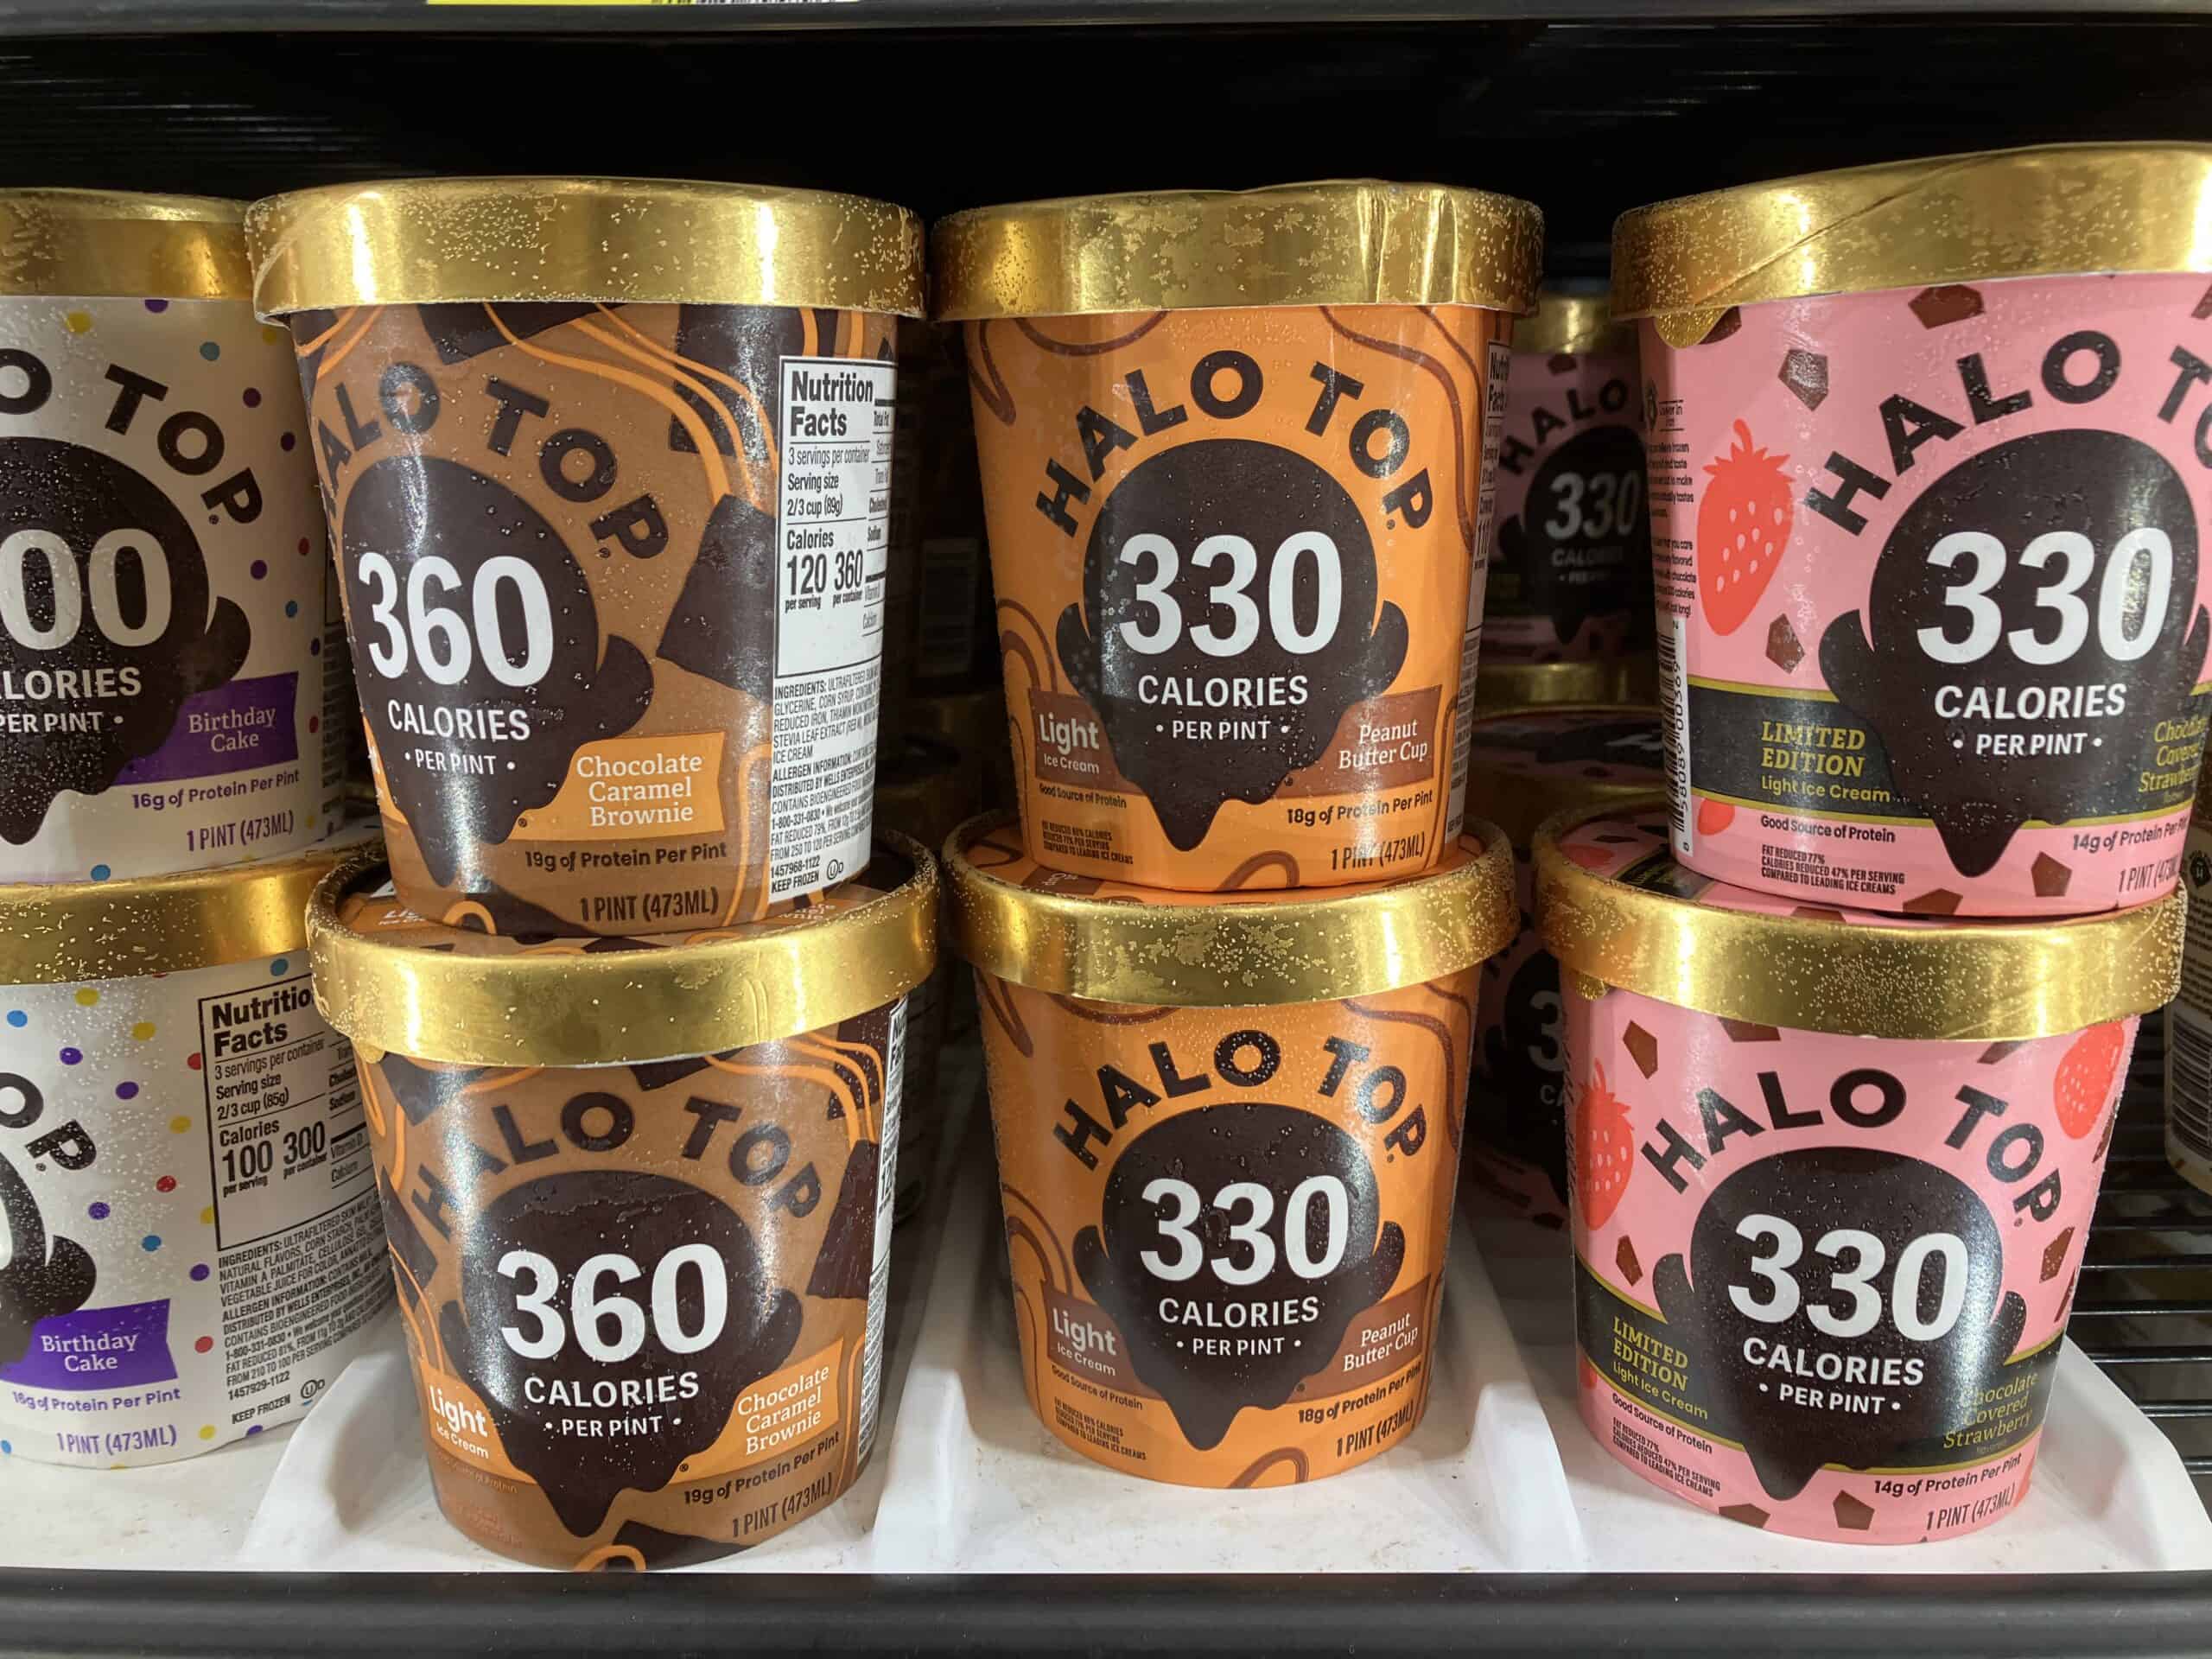 Halo Top ice cream